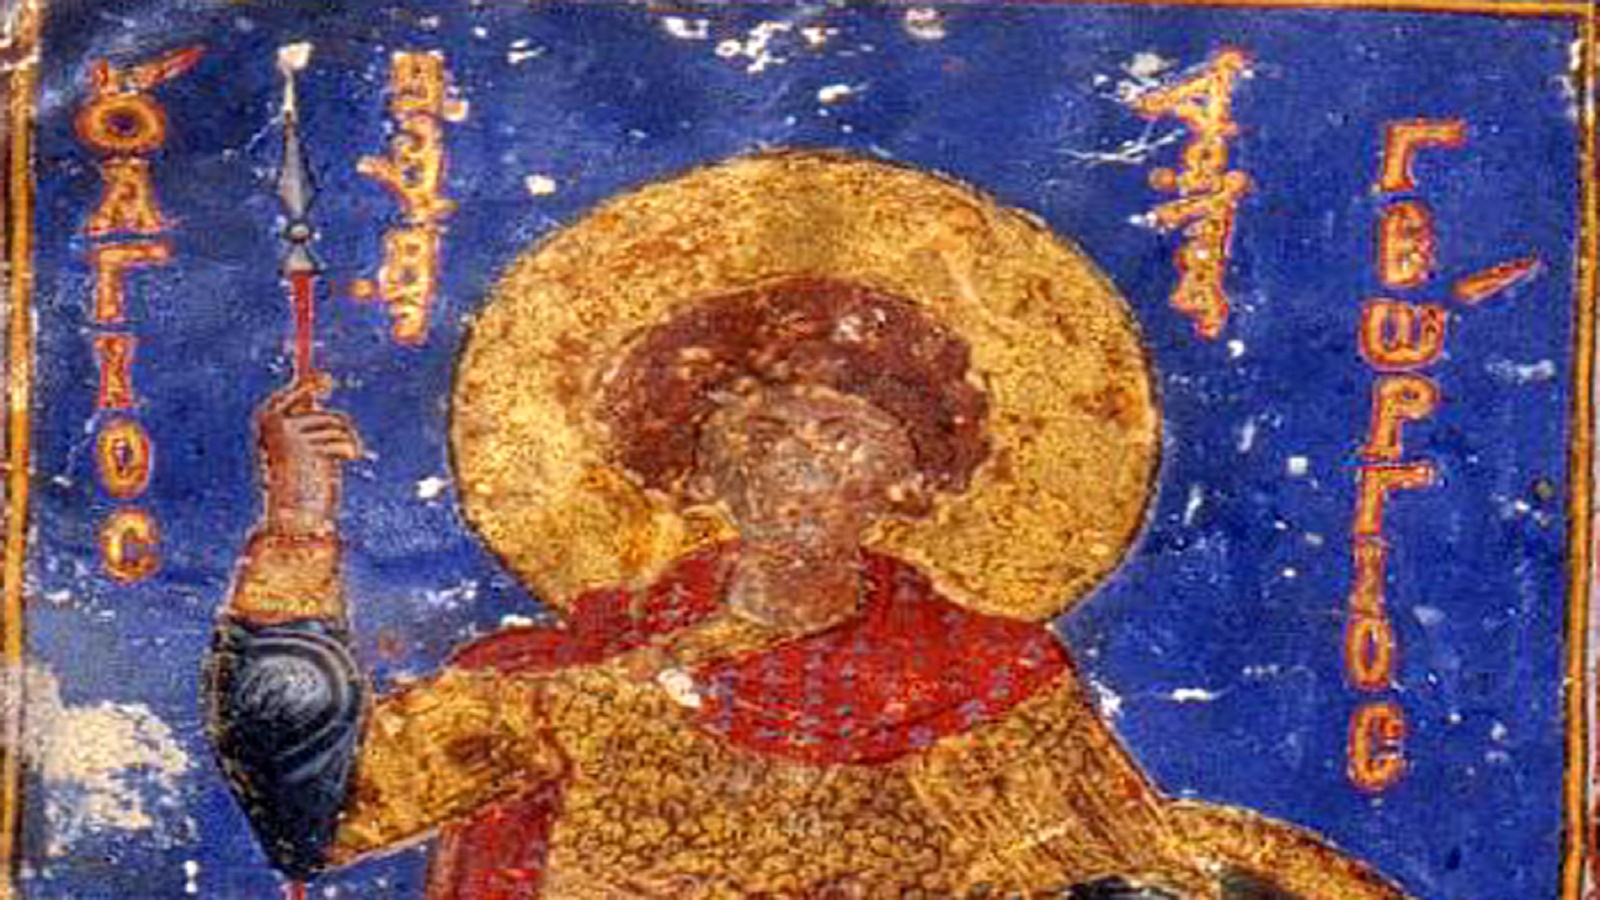 القديس جاورجيوس، منمنمة سريانية من القرن الحادي عشر، بطريركية السريان الأرثوذكس في دمشق.